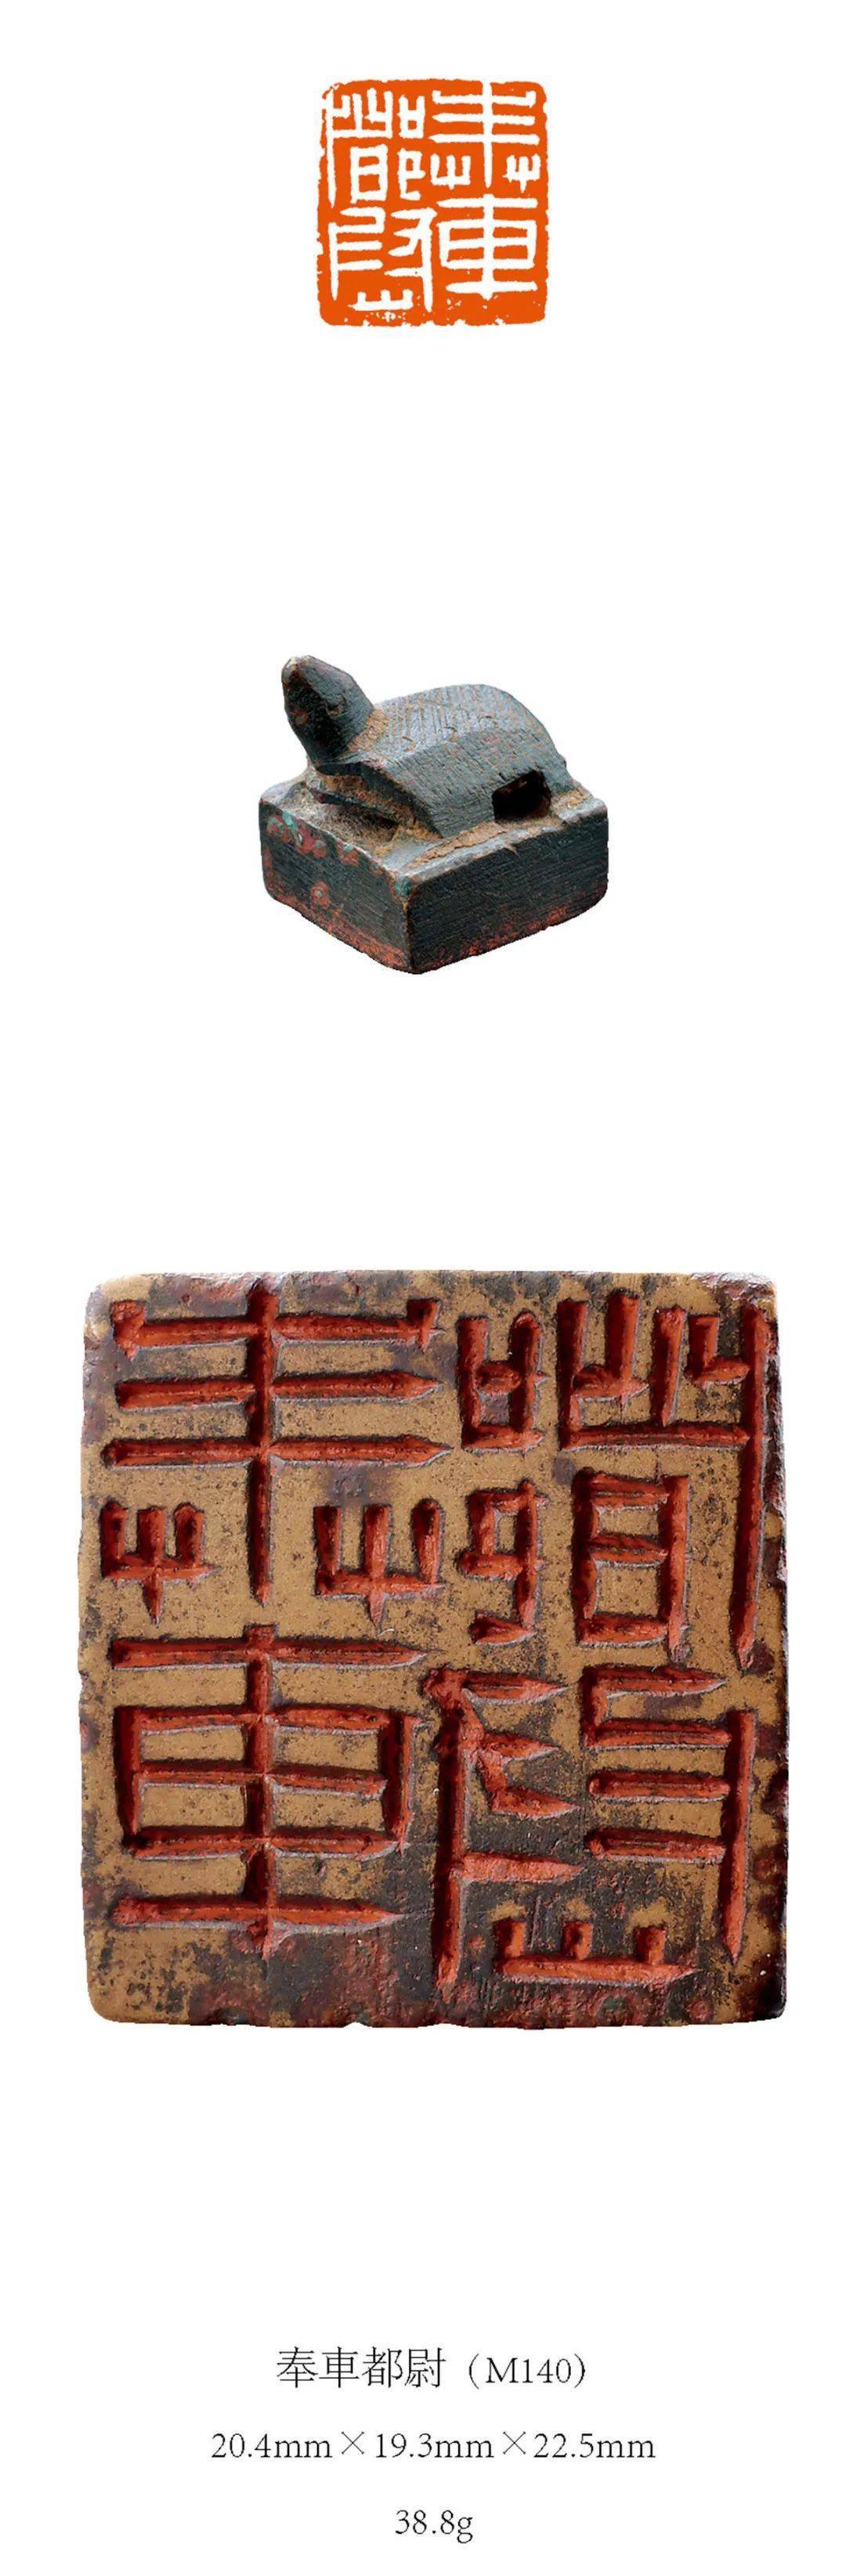 秘藏日本近百年上千方历代古玺印精品首次集结面世